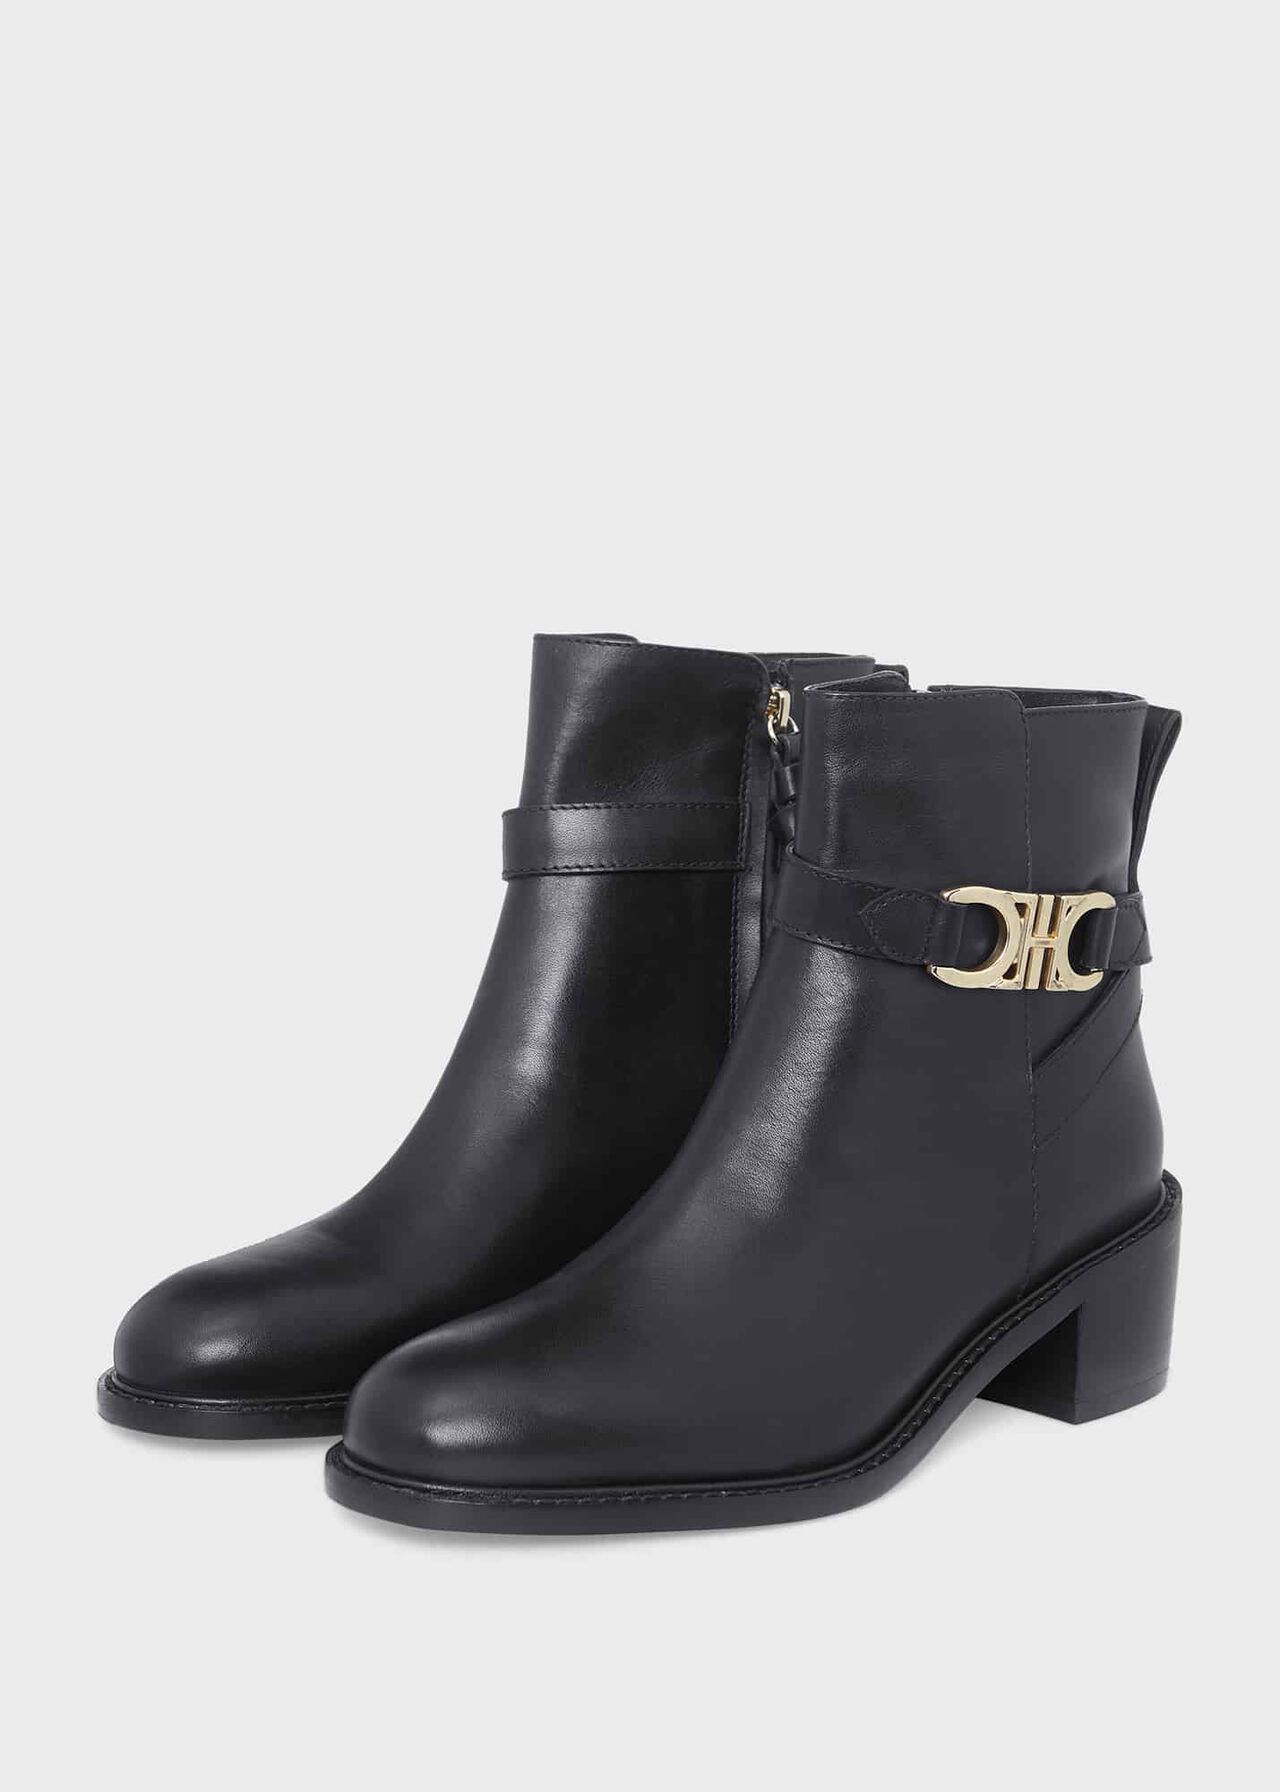 Rosaleen Ankle Boots, Black, hi-res